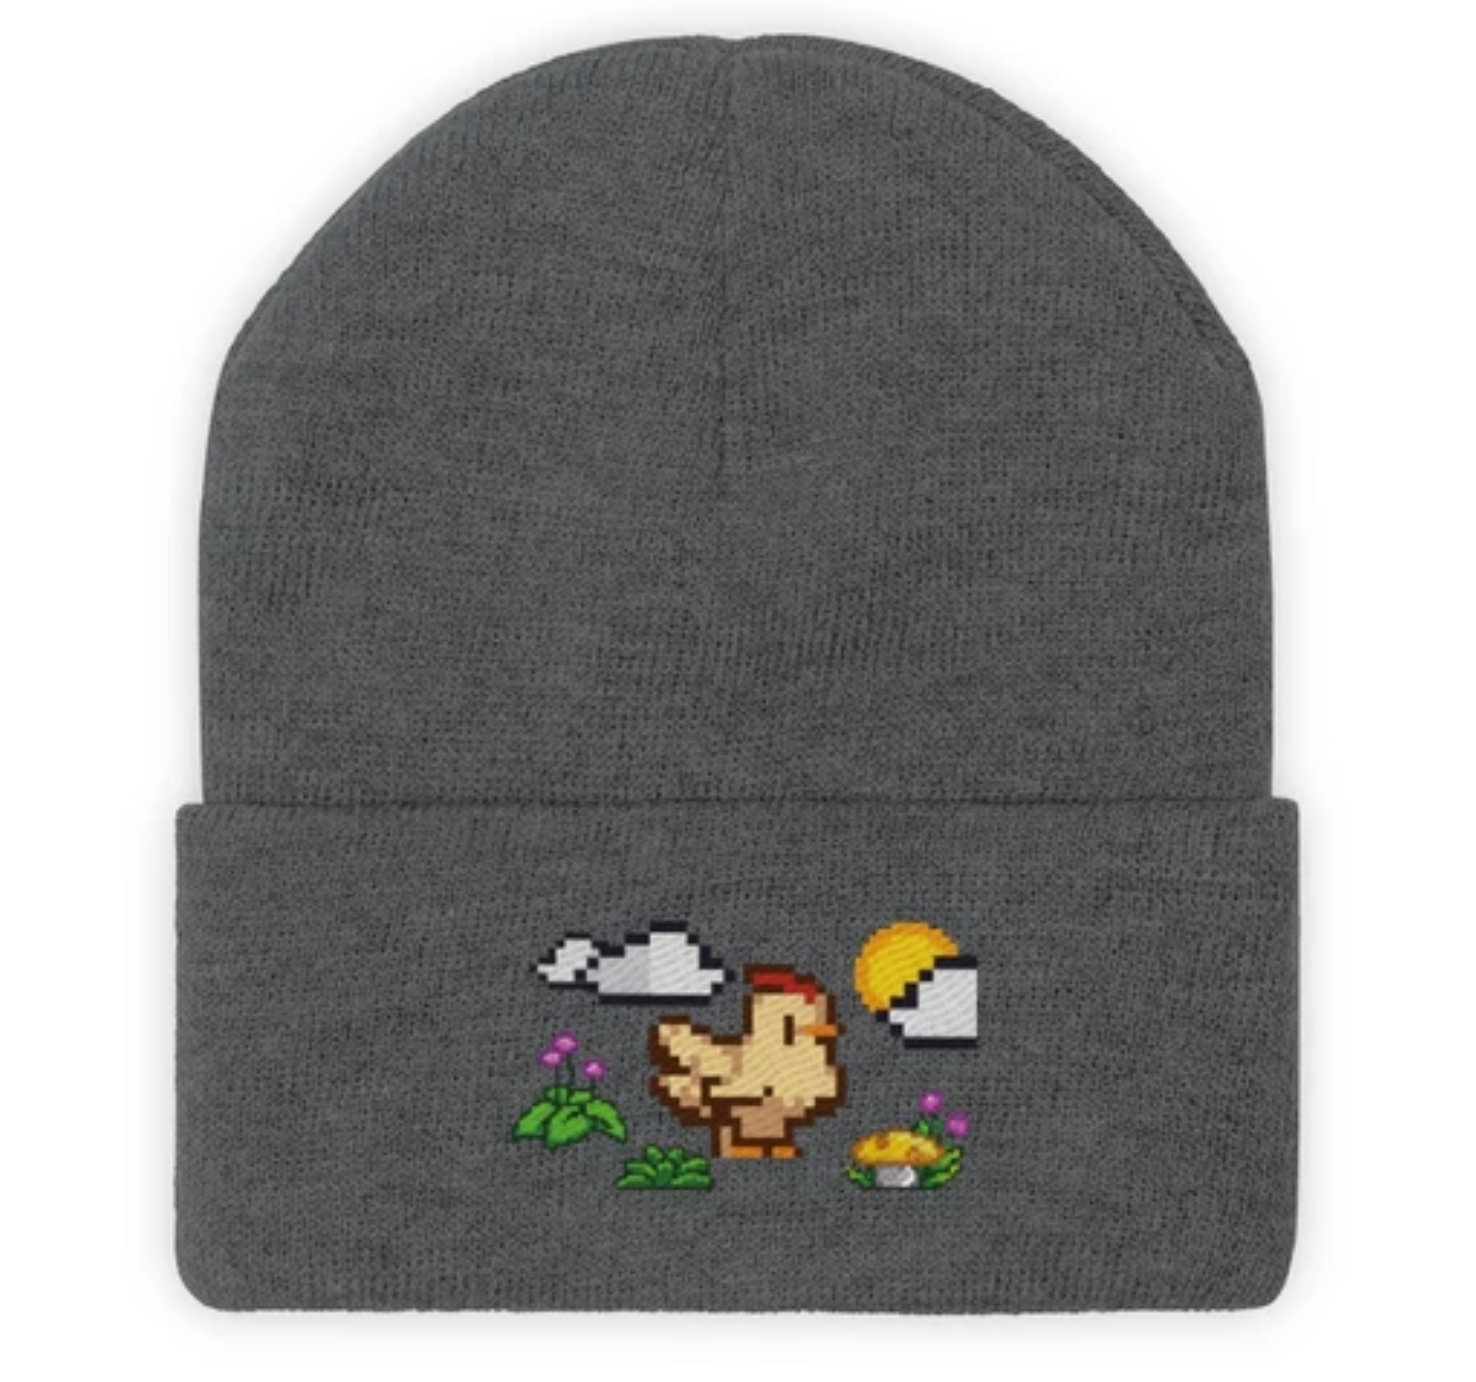 Beanie hat with a chicken